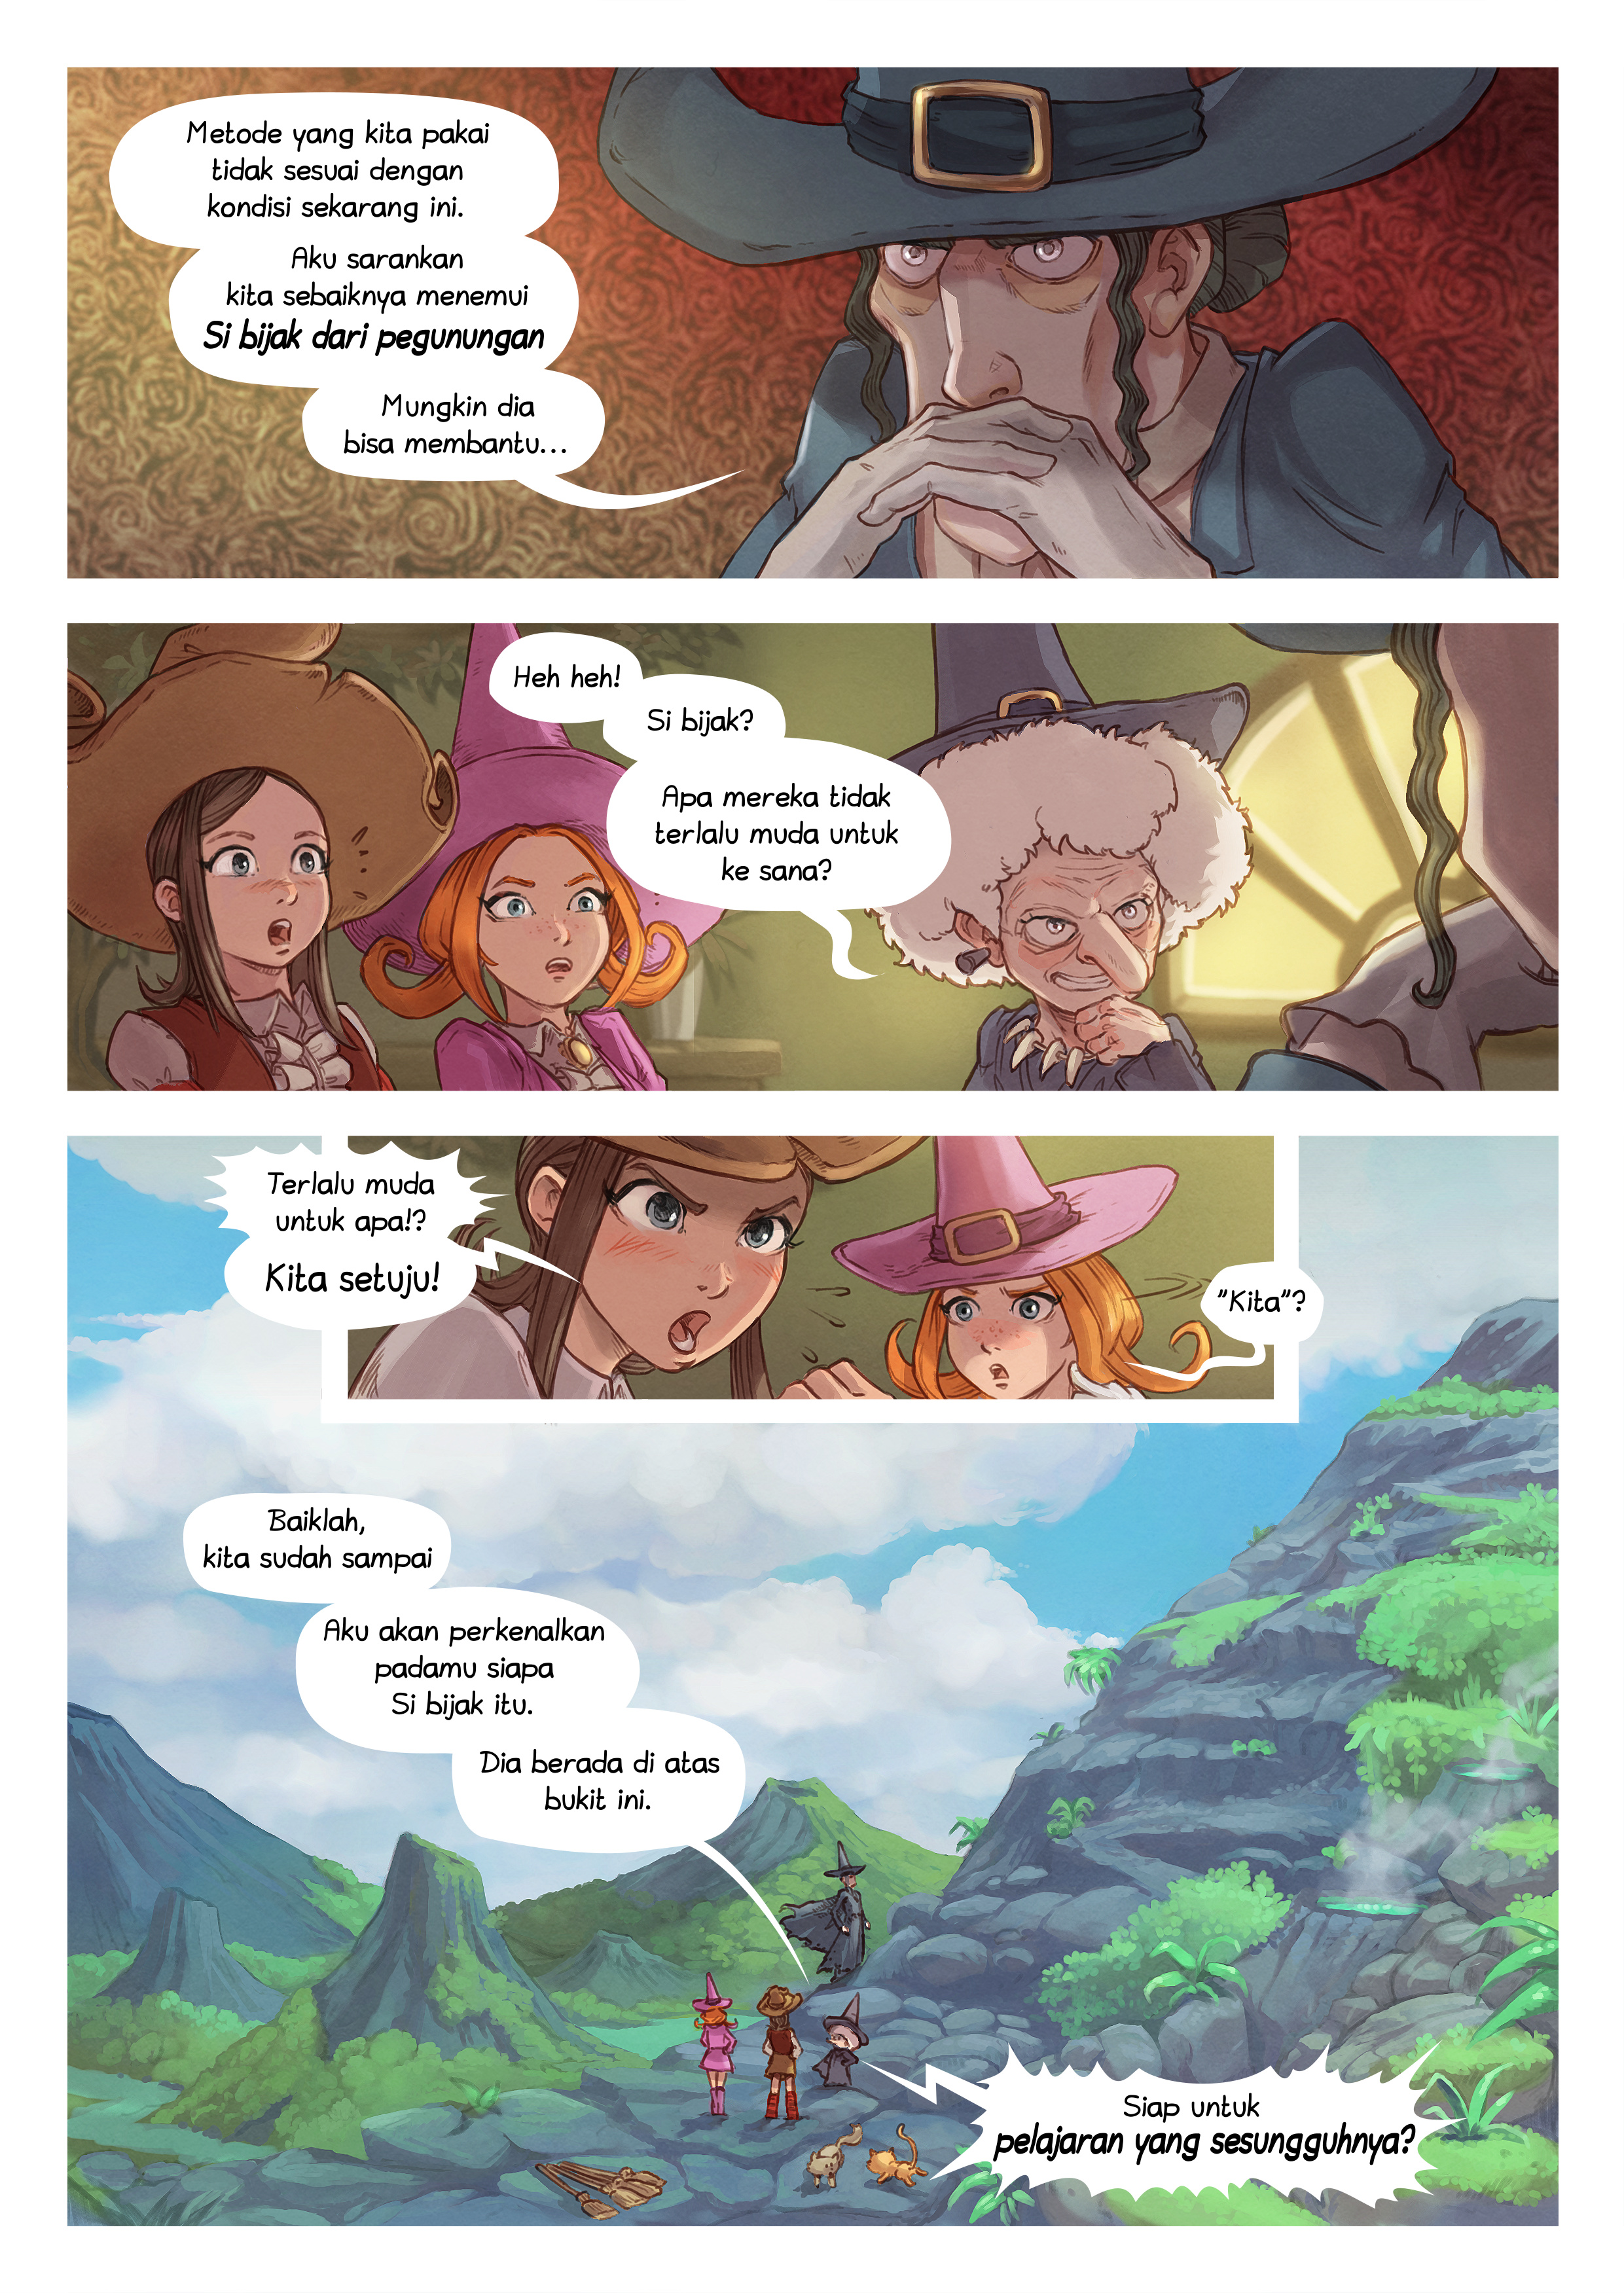 Episode 16: Si bijak dari pegunungan, Page 4